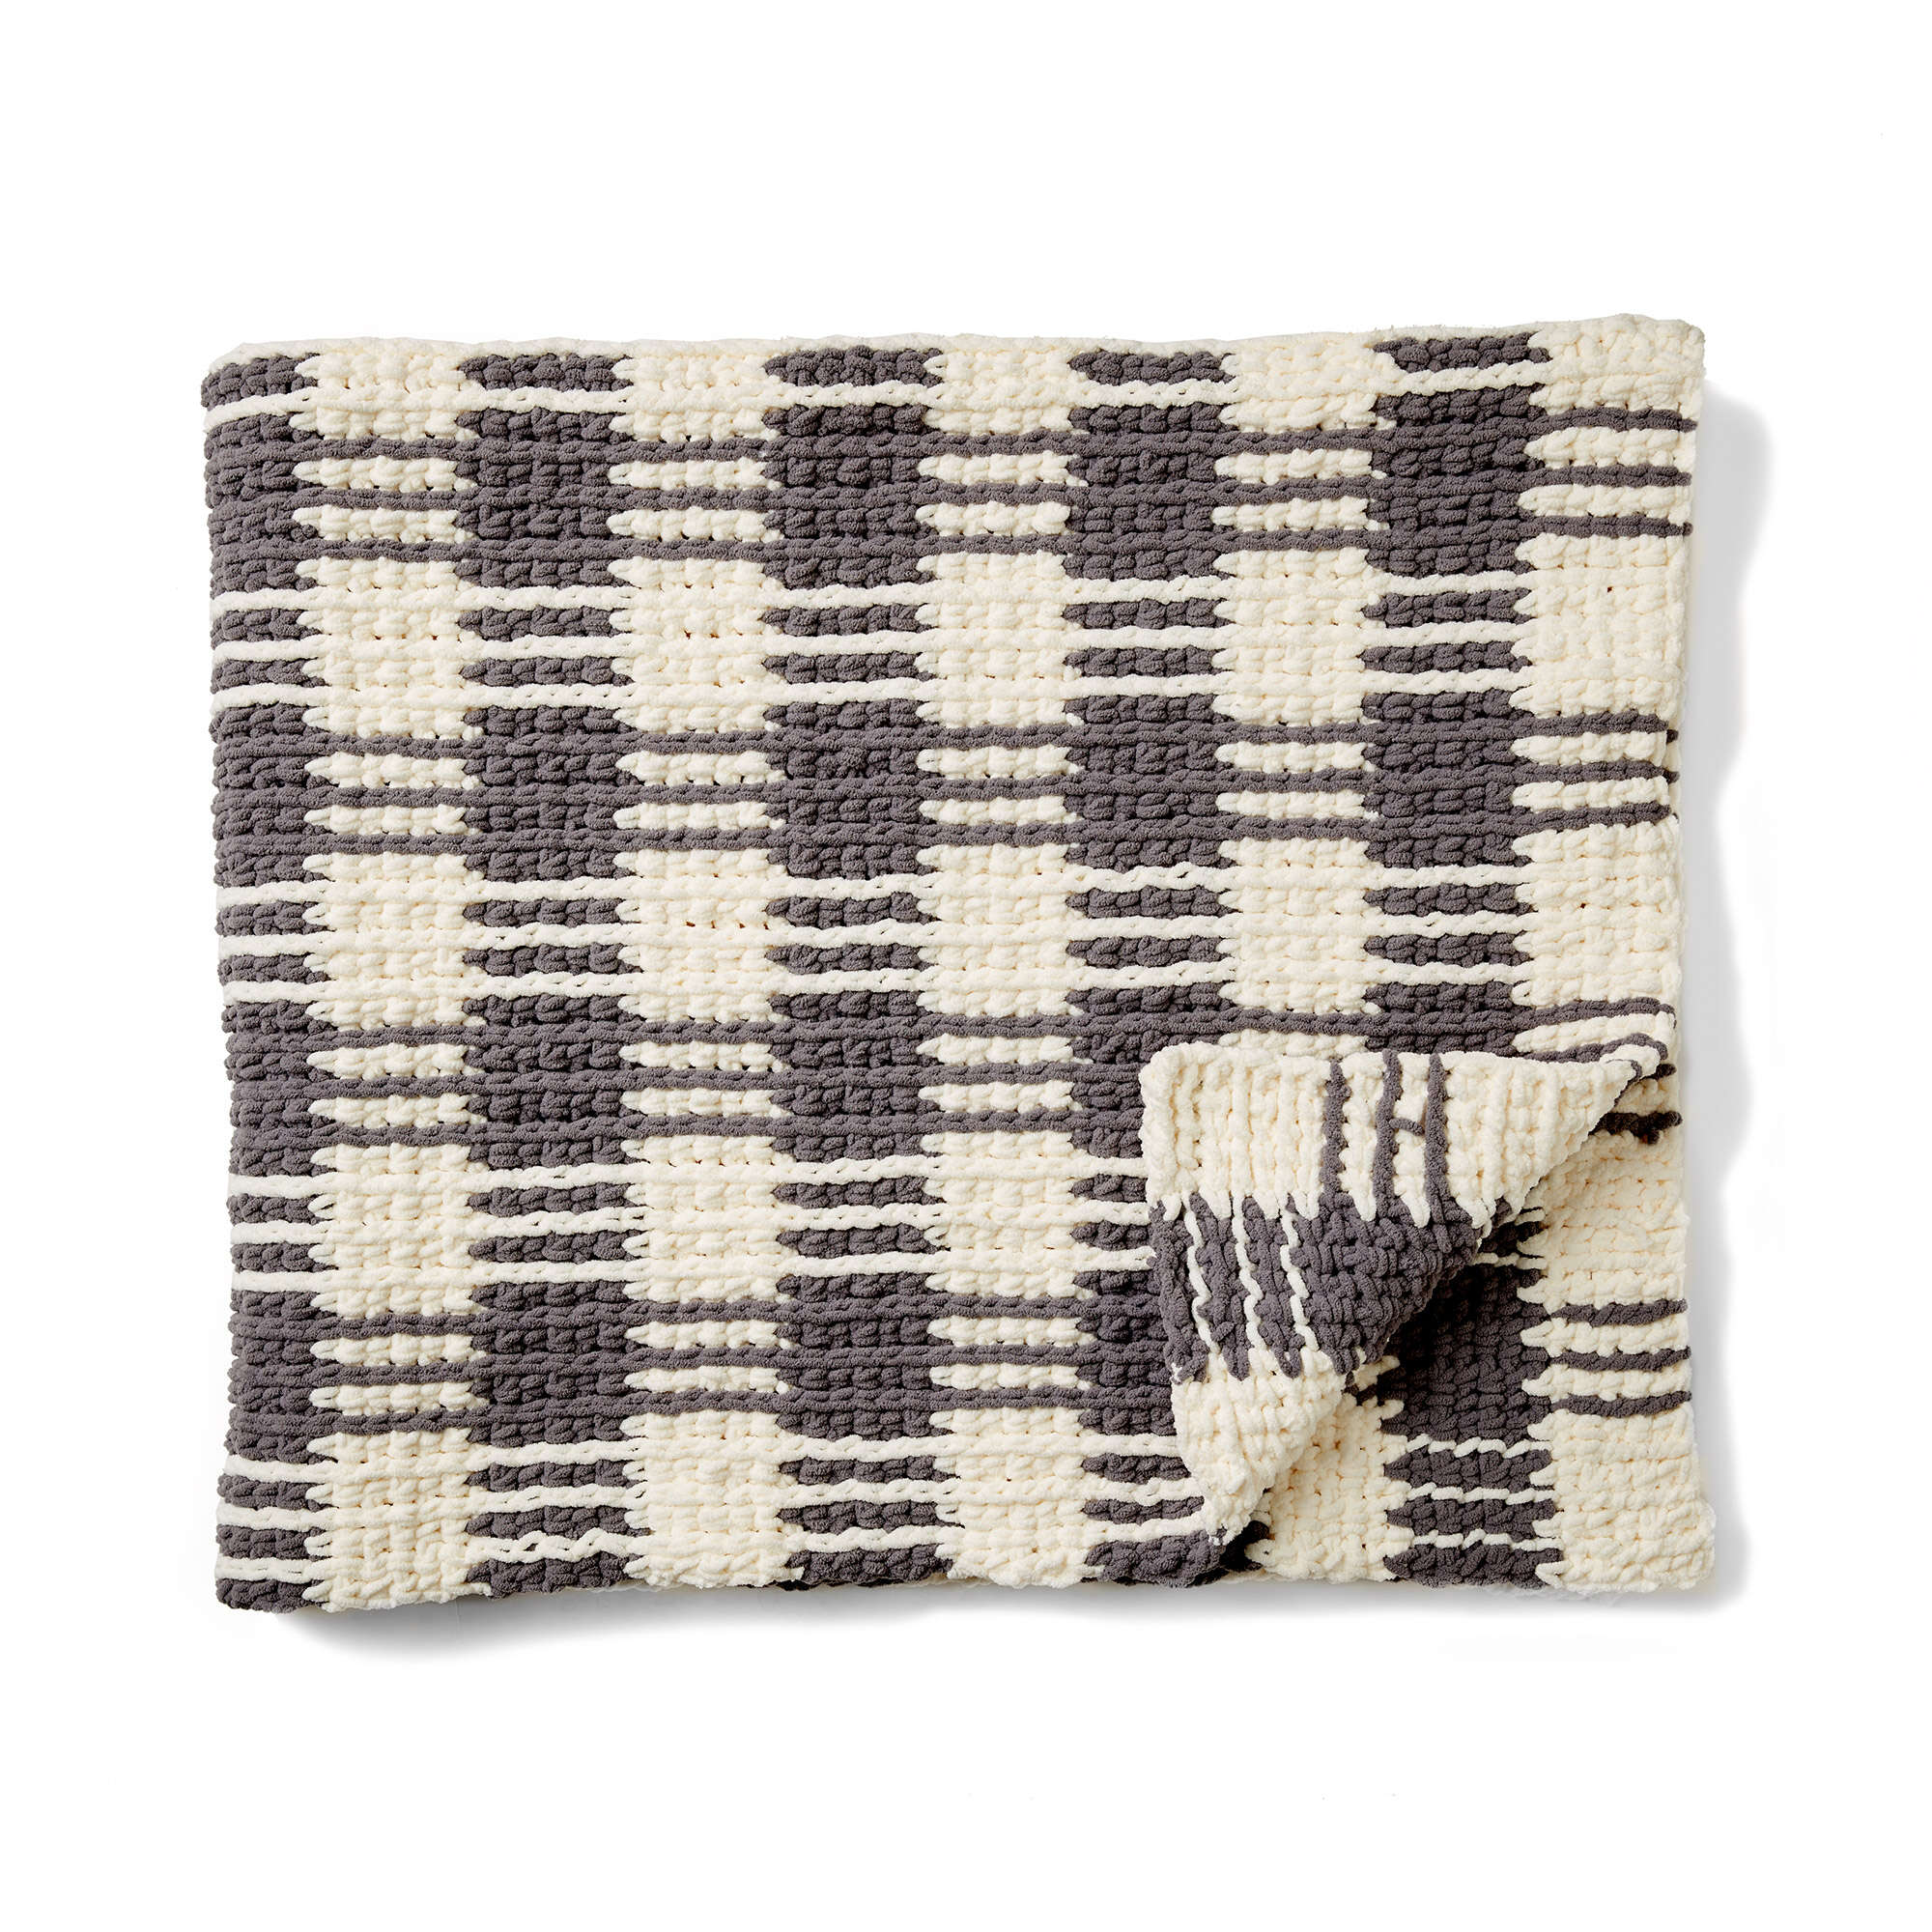 Free Pattern: Crochet Gingham Plaid Afghan in Bernat Blanket yarn